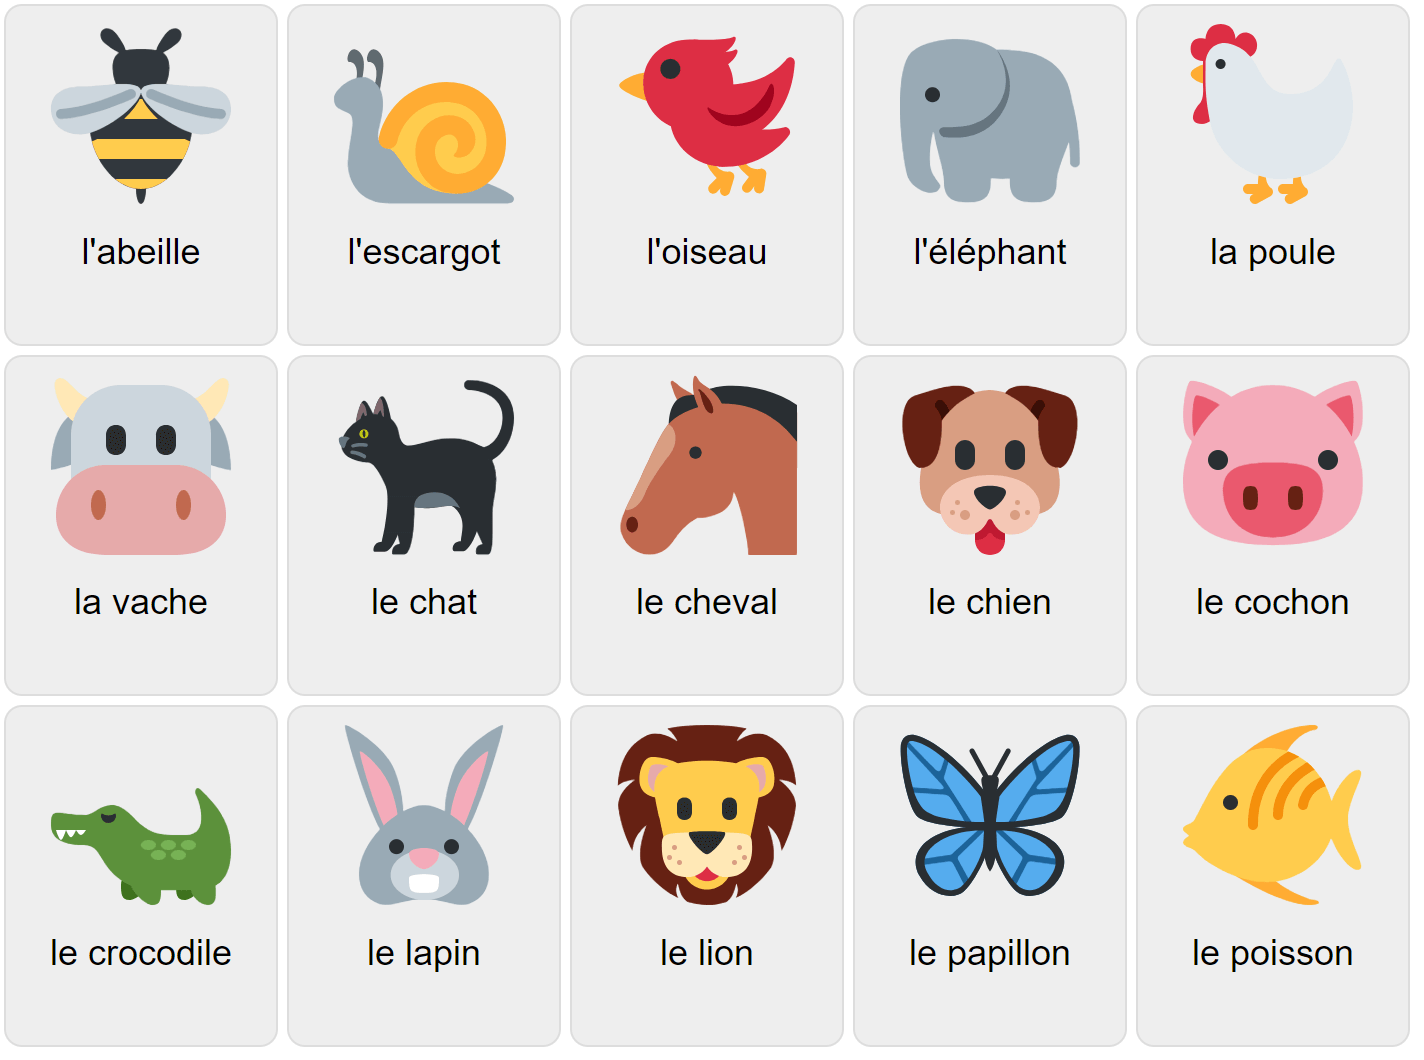 Тварини на французькій мові 1